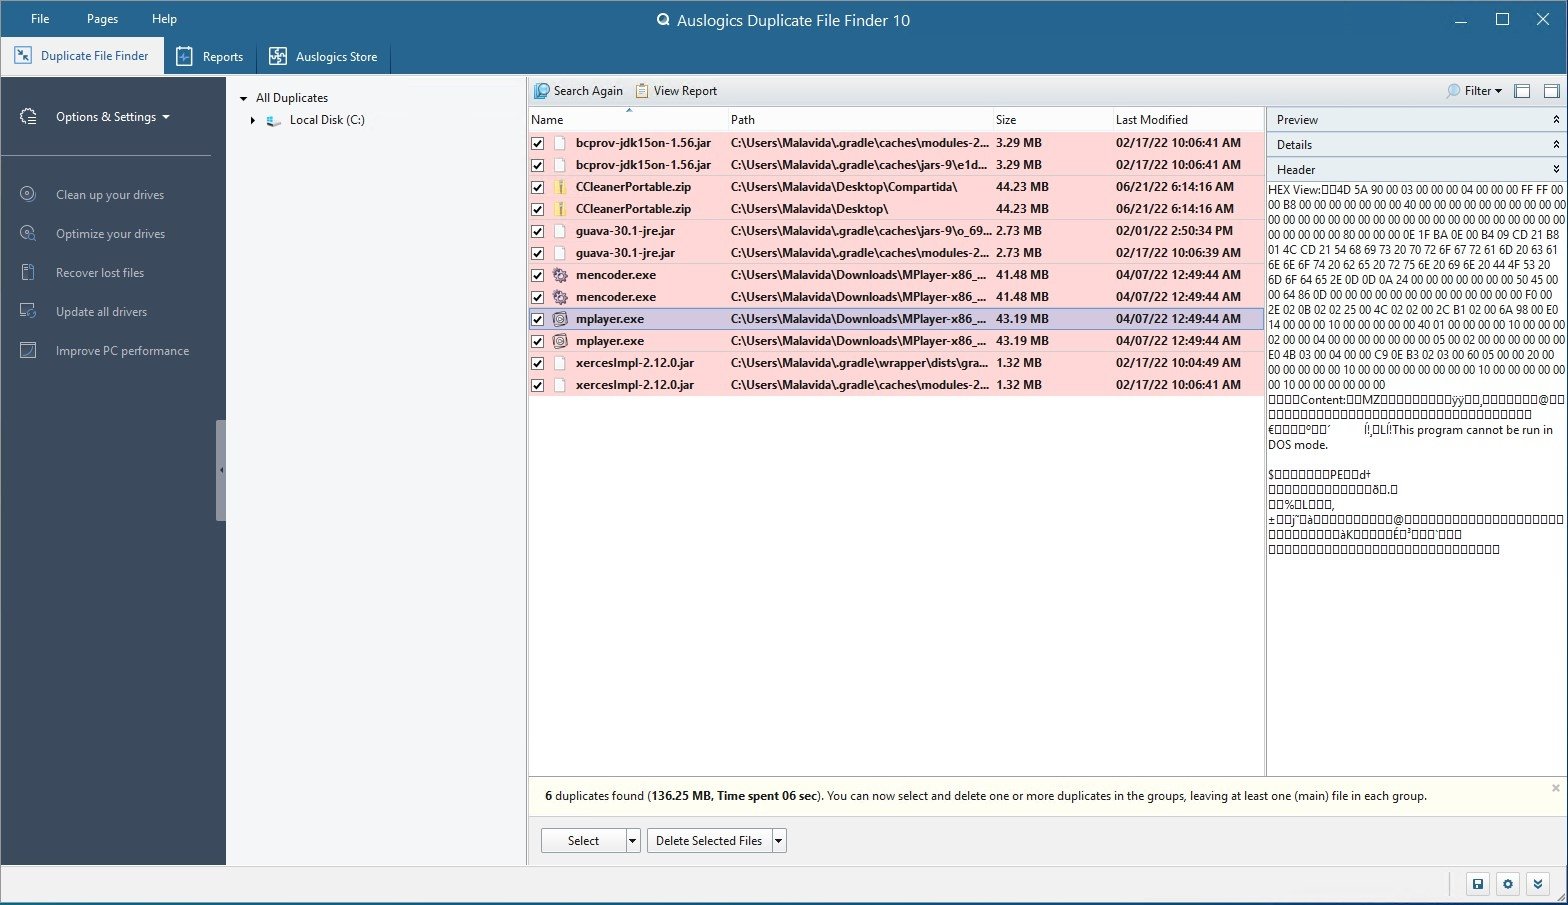 instaling Auslogics Duplicate File Finder 10.0.0.4